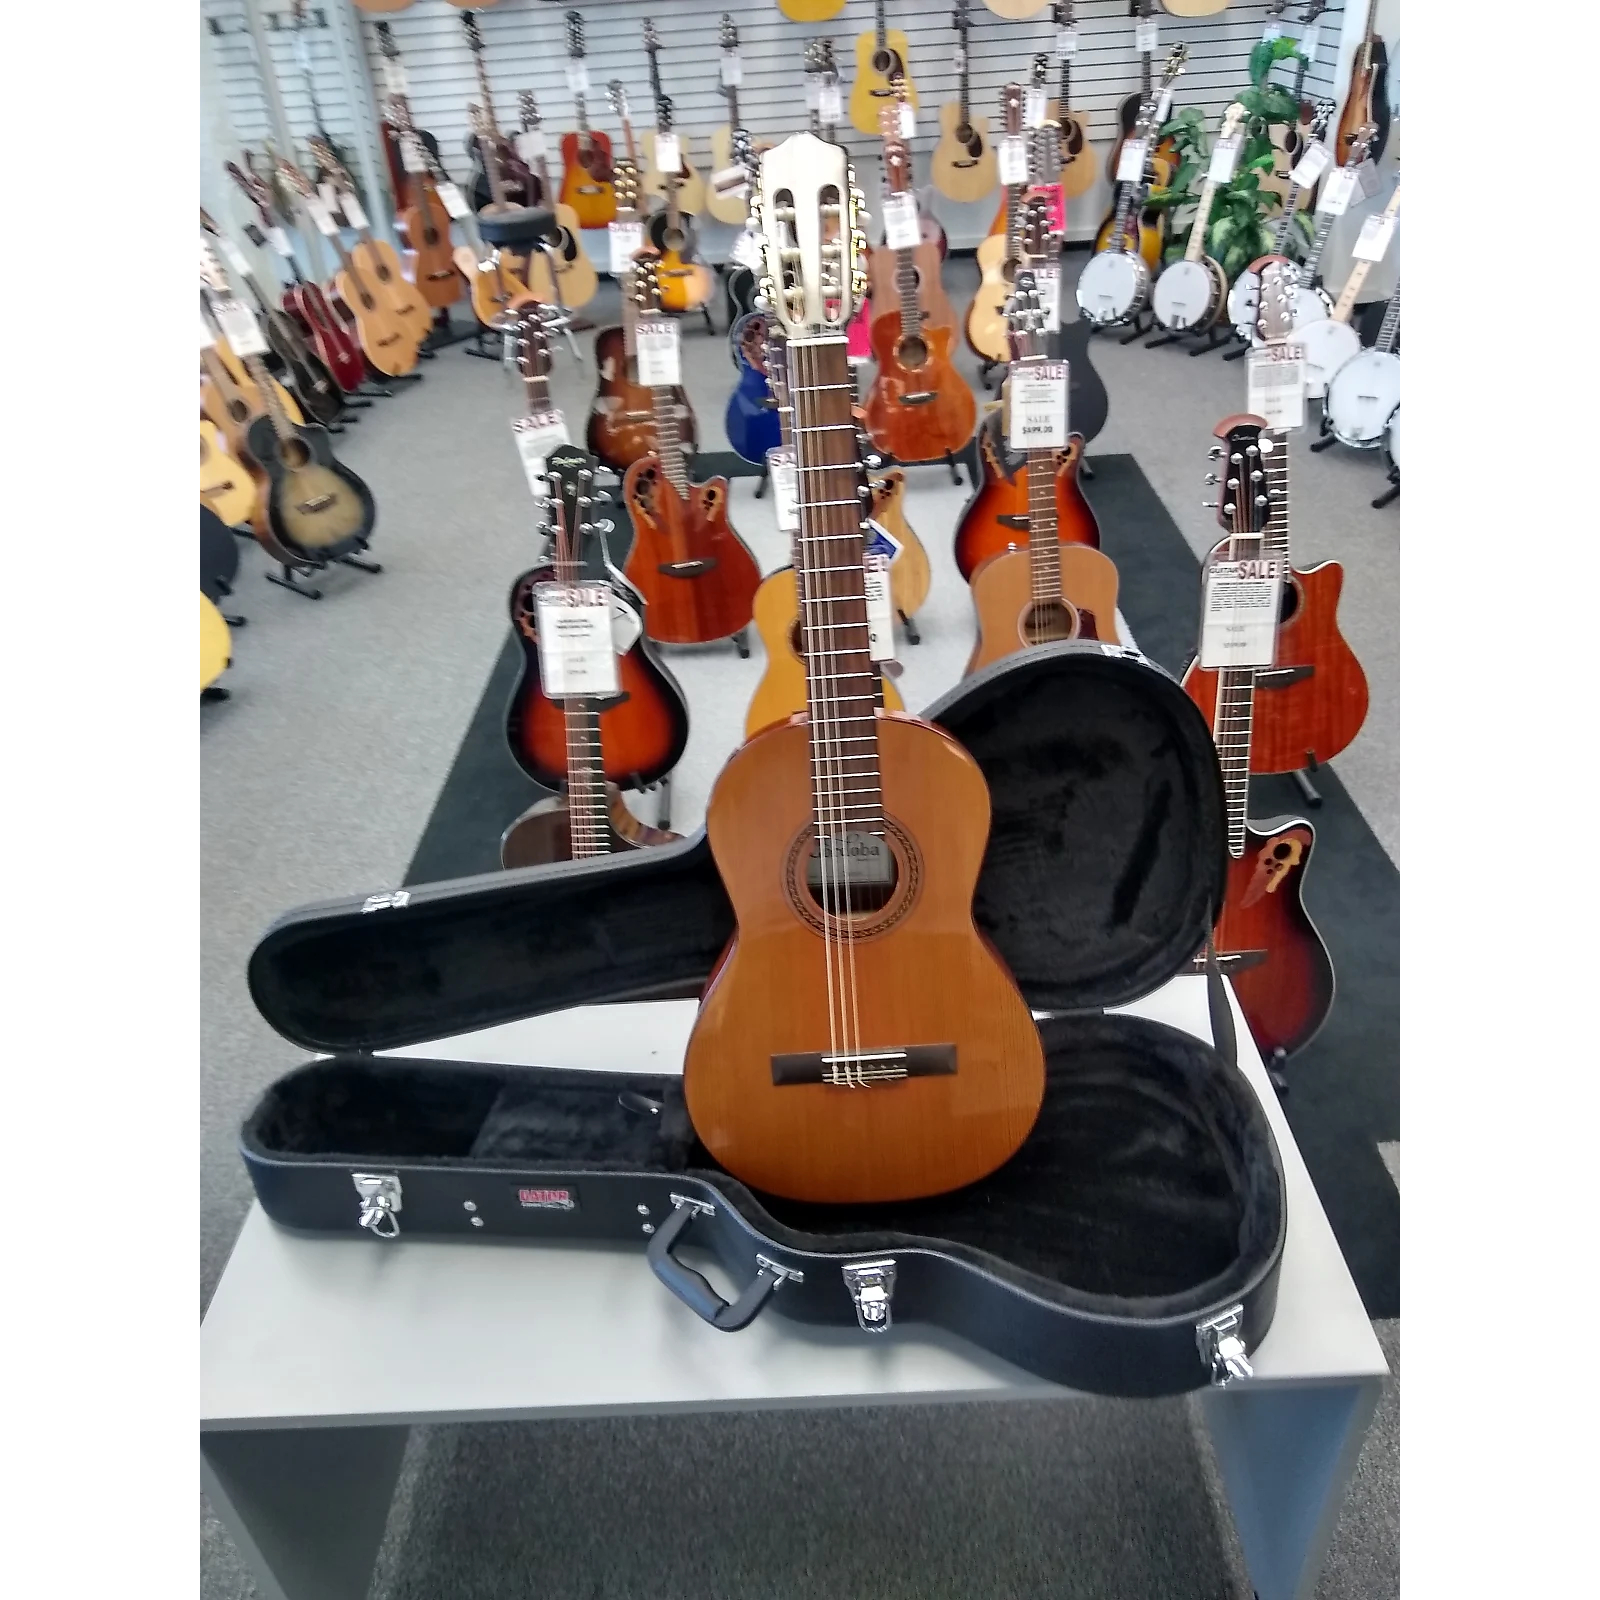 Cordoba Cadete Classical Guitar